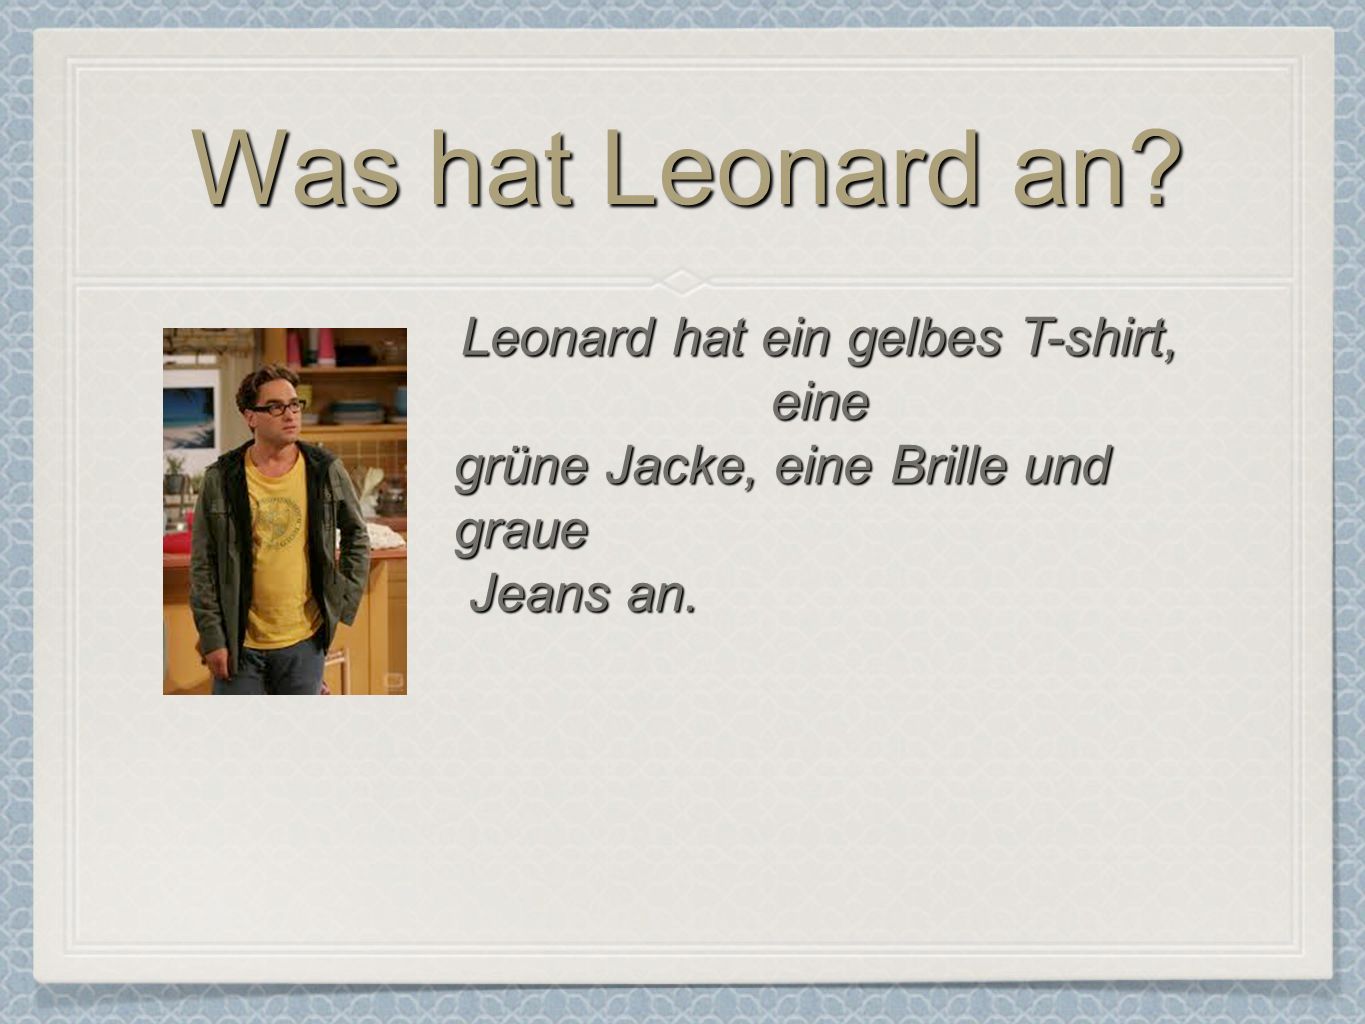 Leonard hat ein gelbes T-shirt, eine